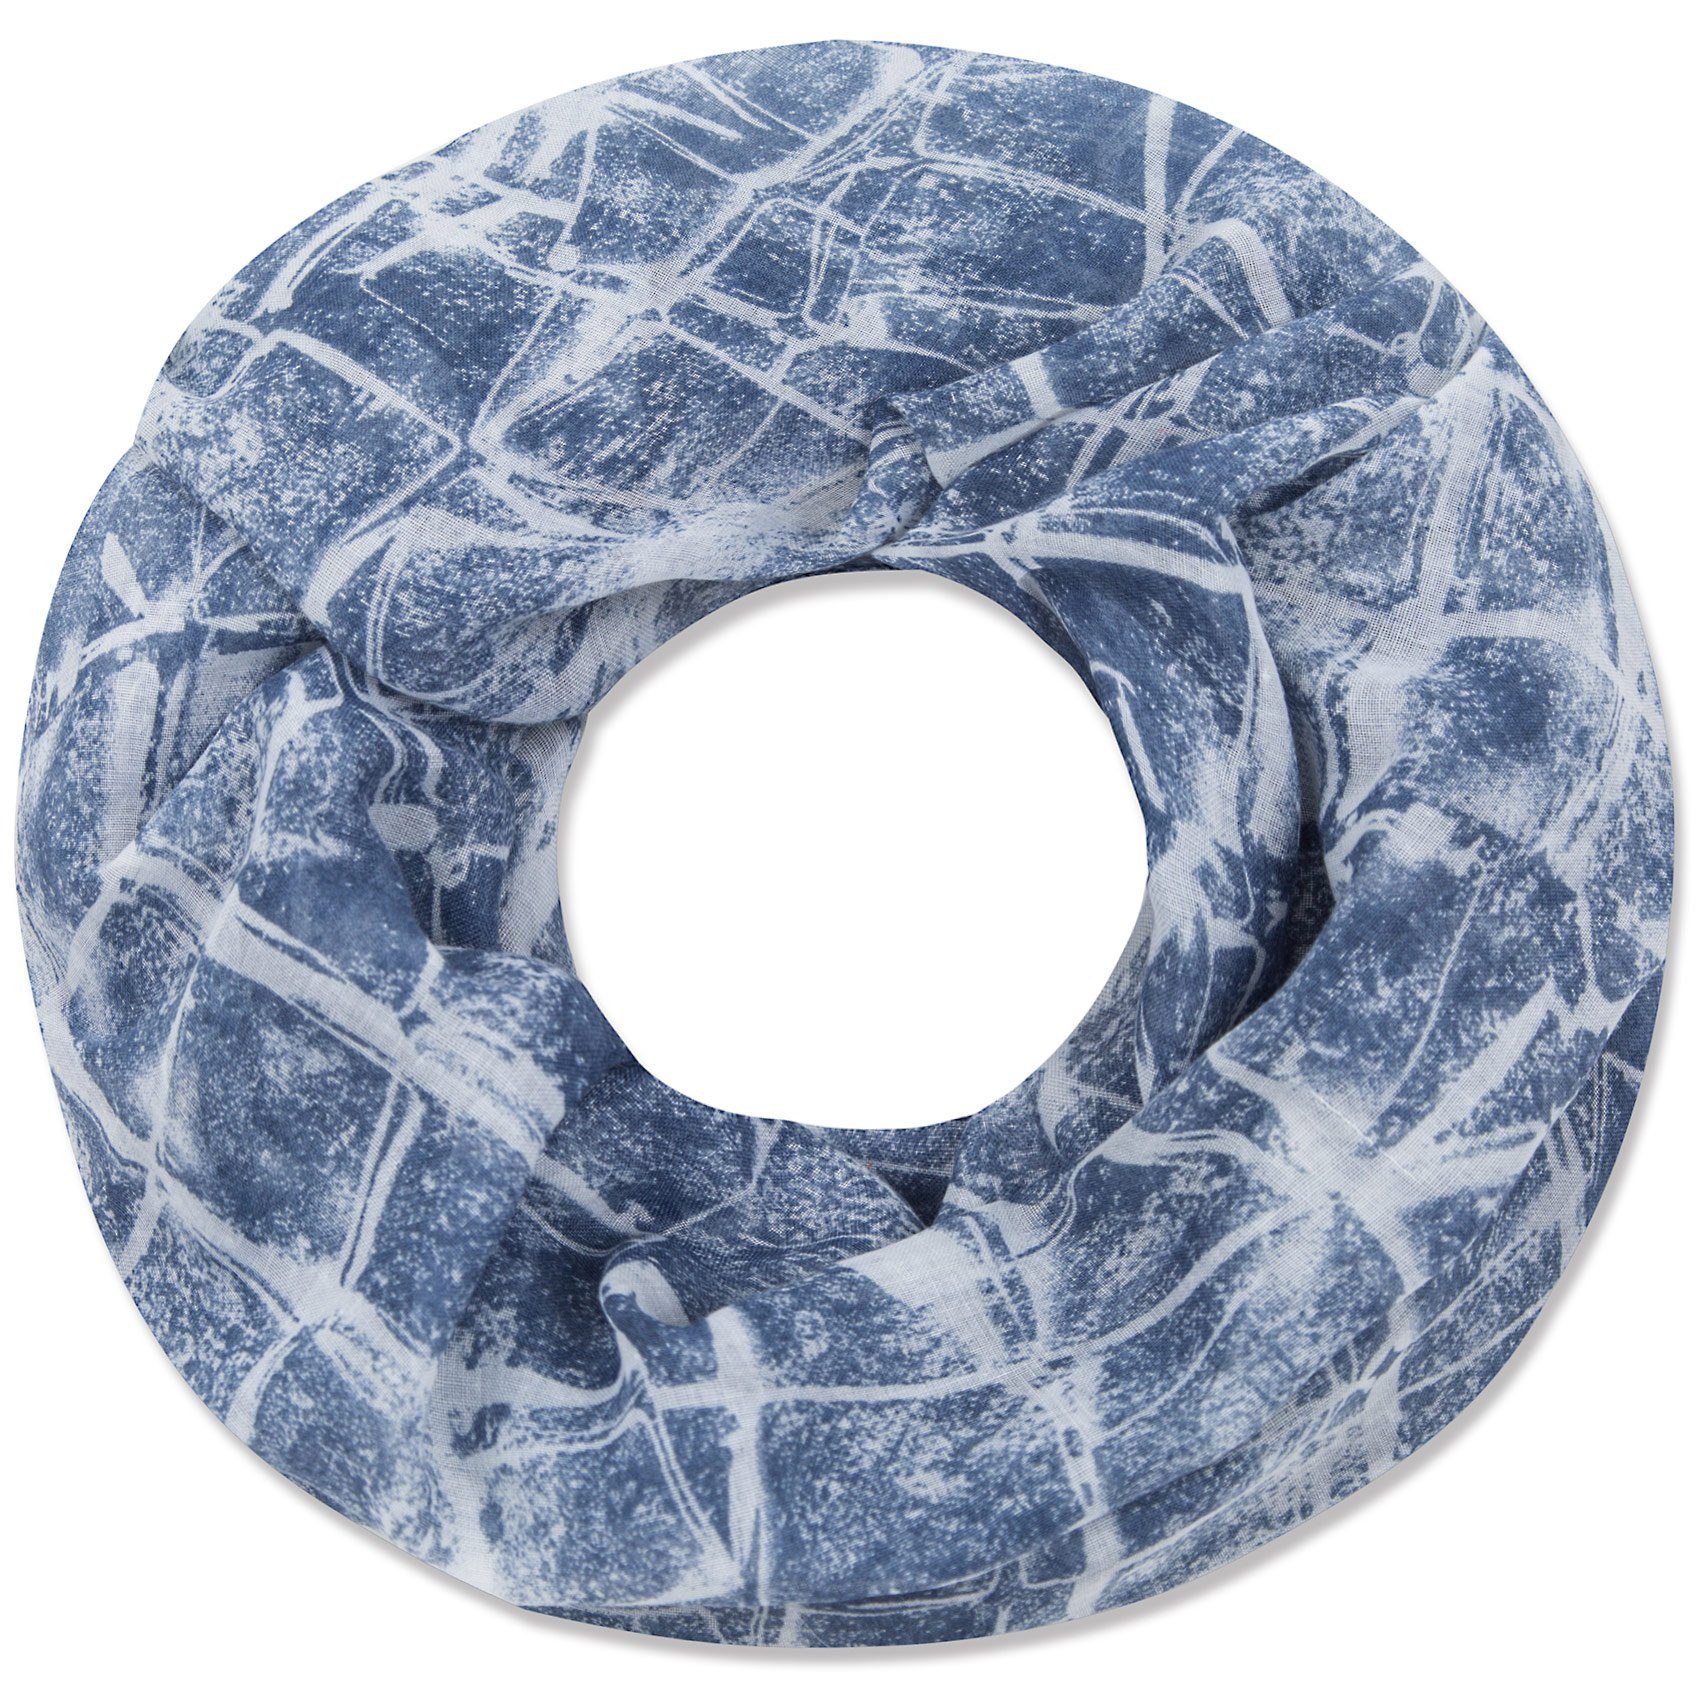 Faera Loop, Damen Schal marmorierter weicher und leichter Loopschal Rundschal blau